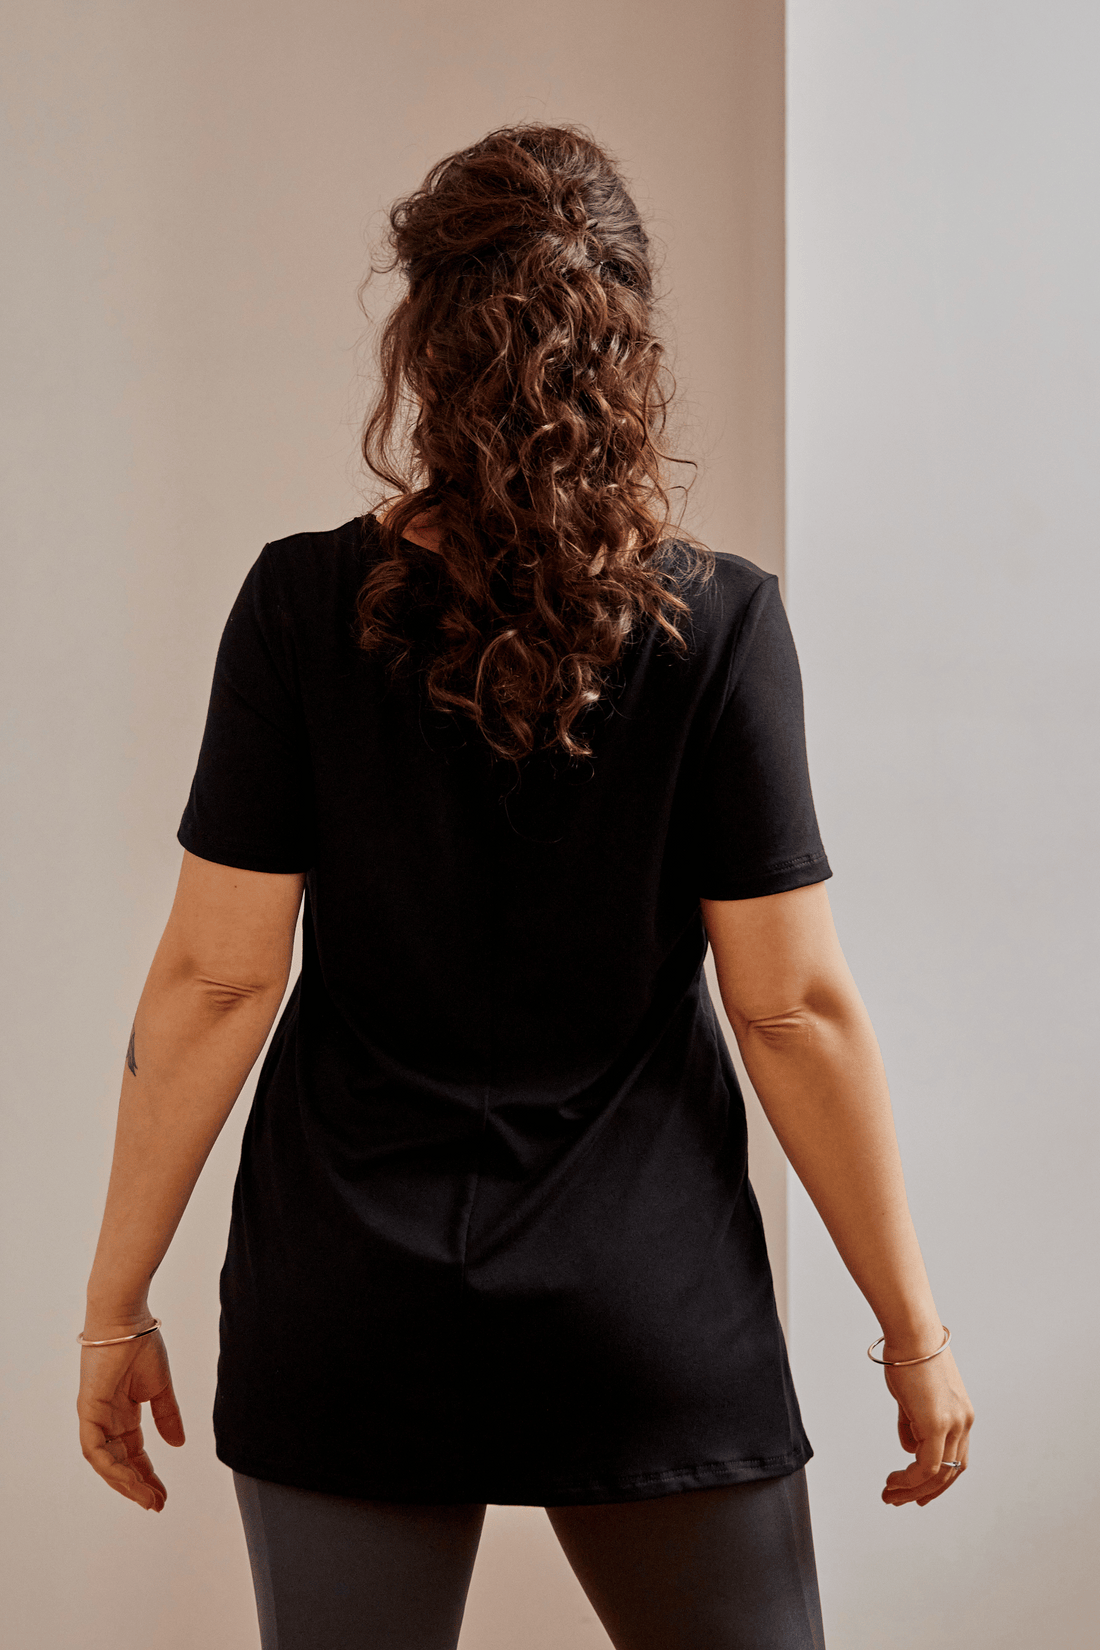 Haut t-shirt col V à fente noir pour femmes fait au Québec, Canada.